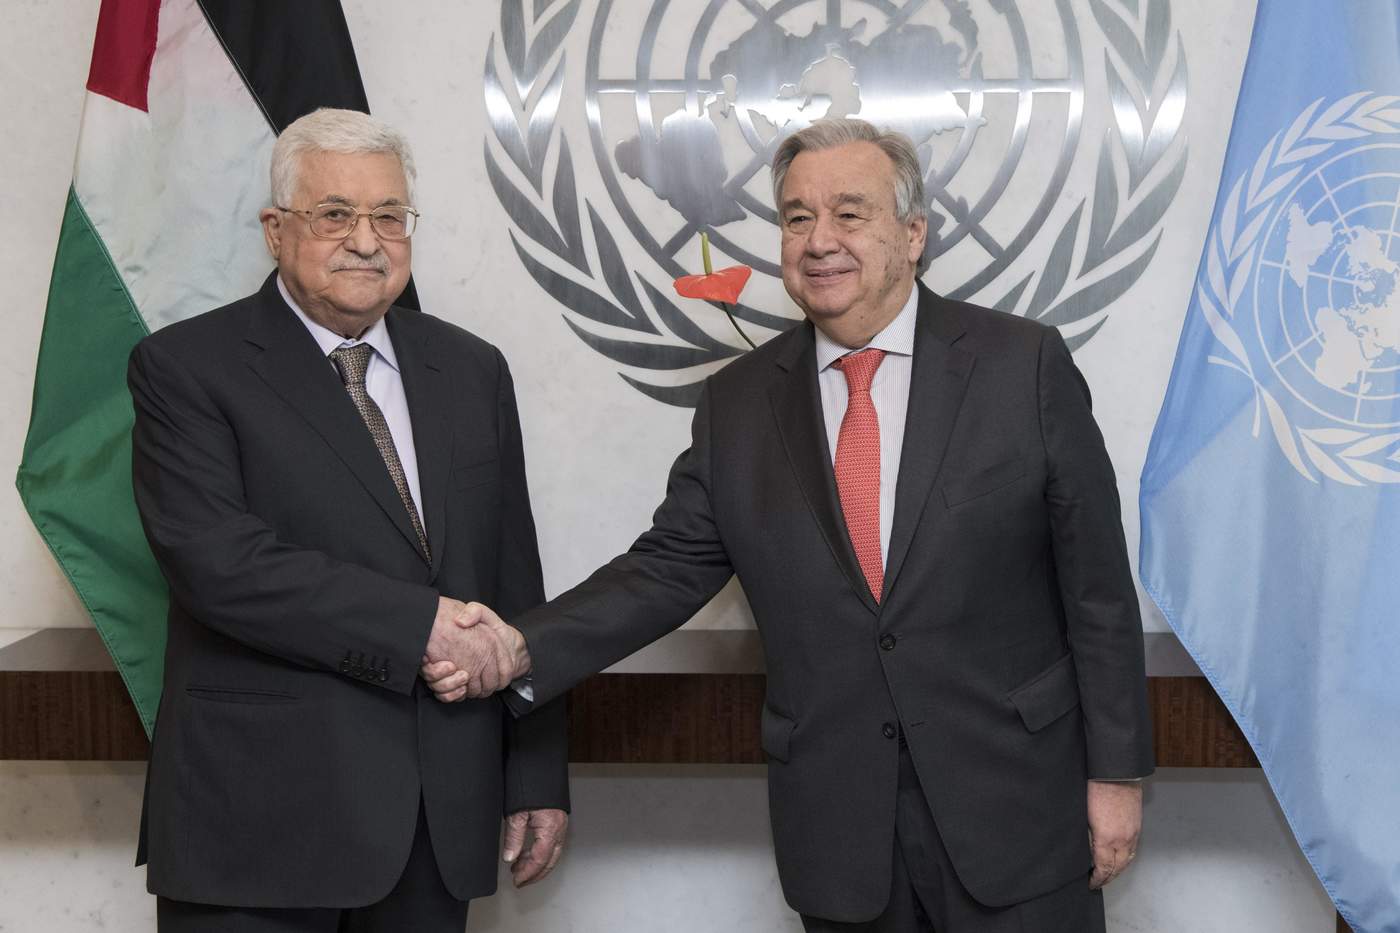 Guterres prevé dos Estados como solución en conflicto Israel-palestinos